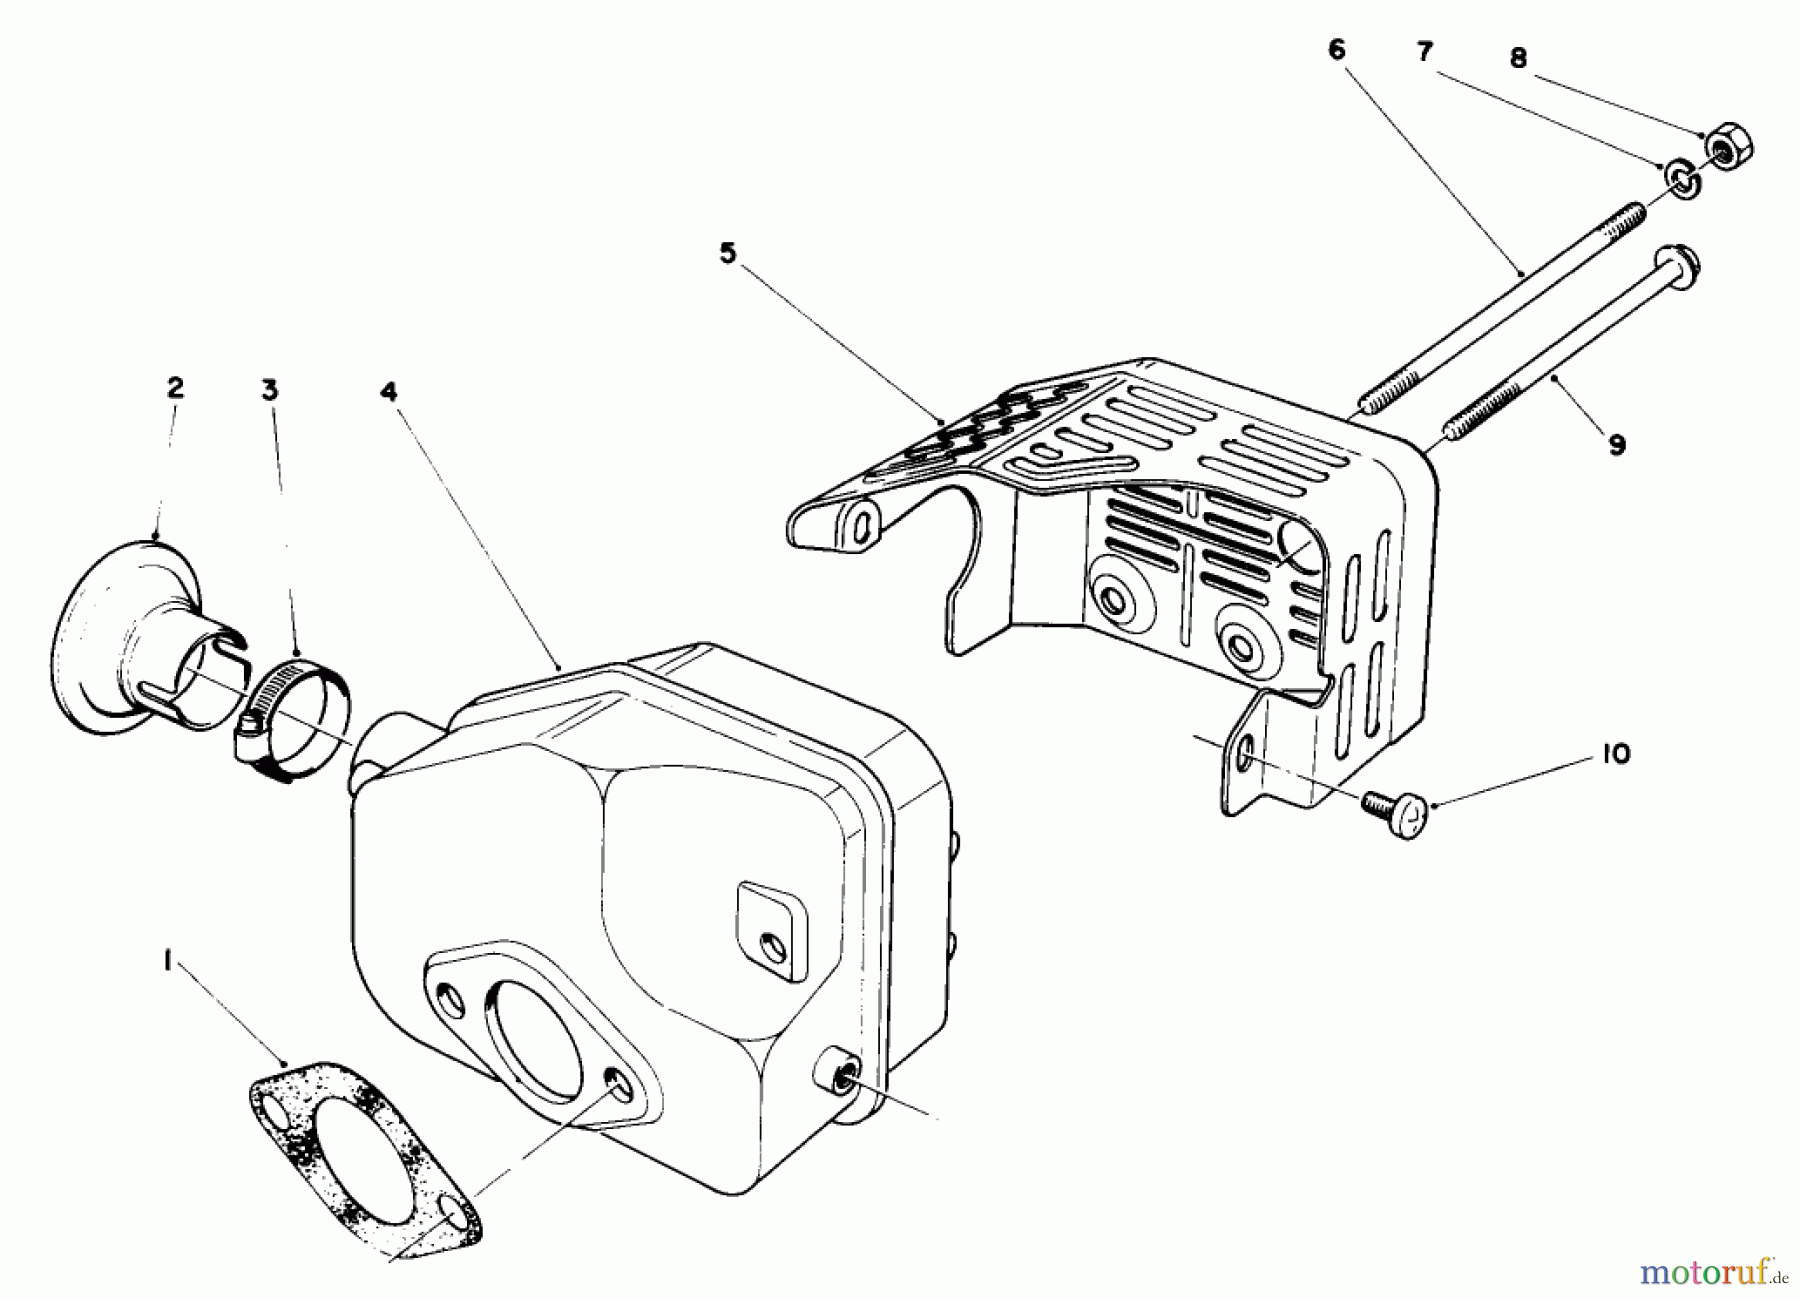  Toro Neu Mowers, Walk-Behind Seite 2 22035 - Toro Lawnmower, 1987 (7000001-7999999) ENGINE ASSEMBLY MODEL NO. 47PG6 #5